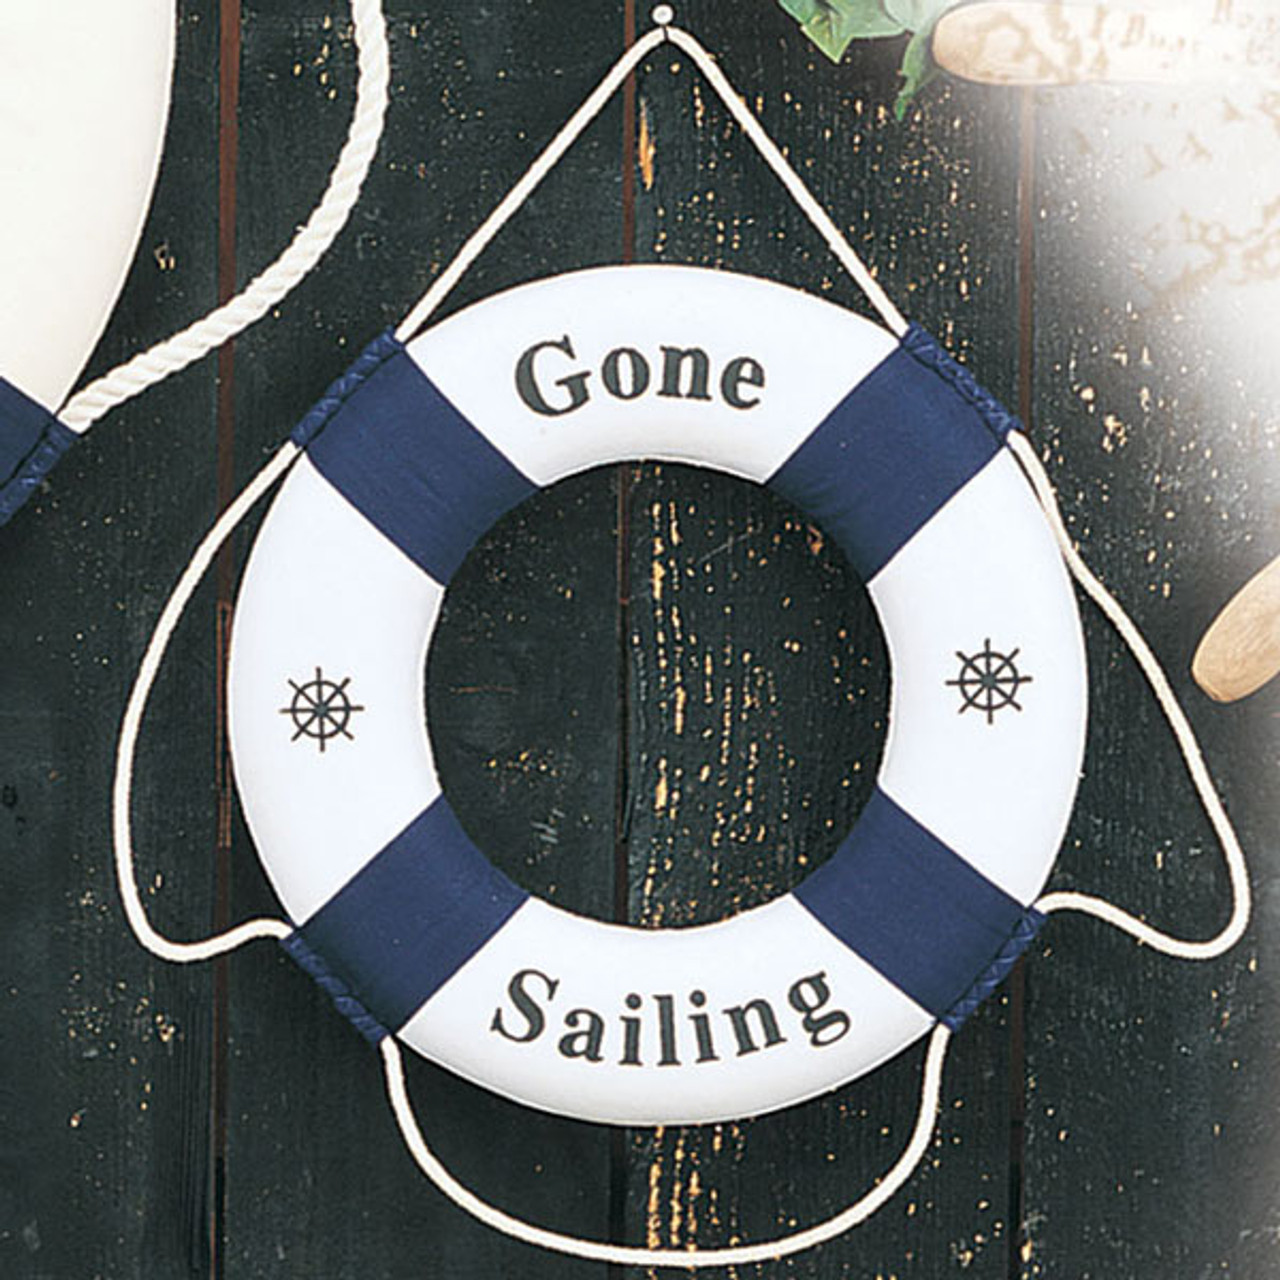 Nautical Buoys / Bouys Gone Sailing Life Rings